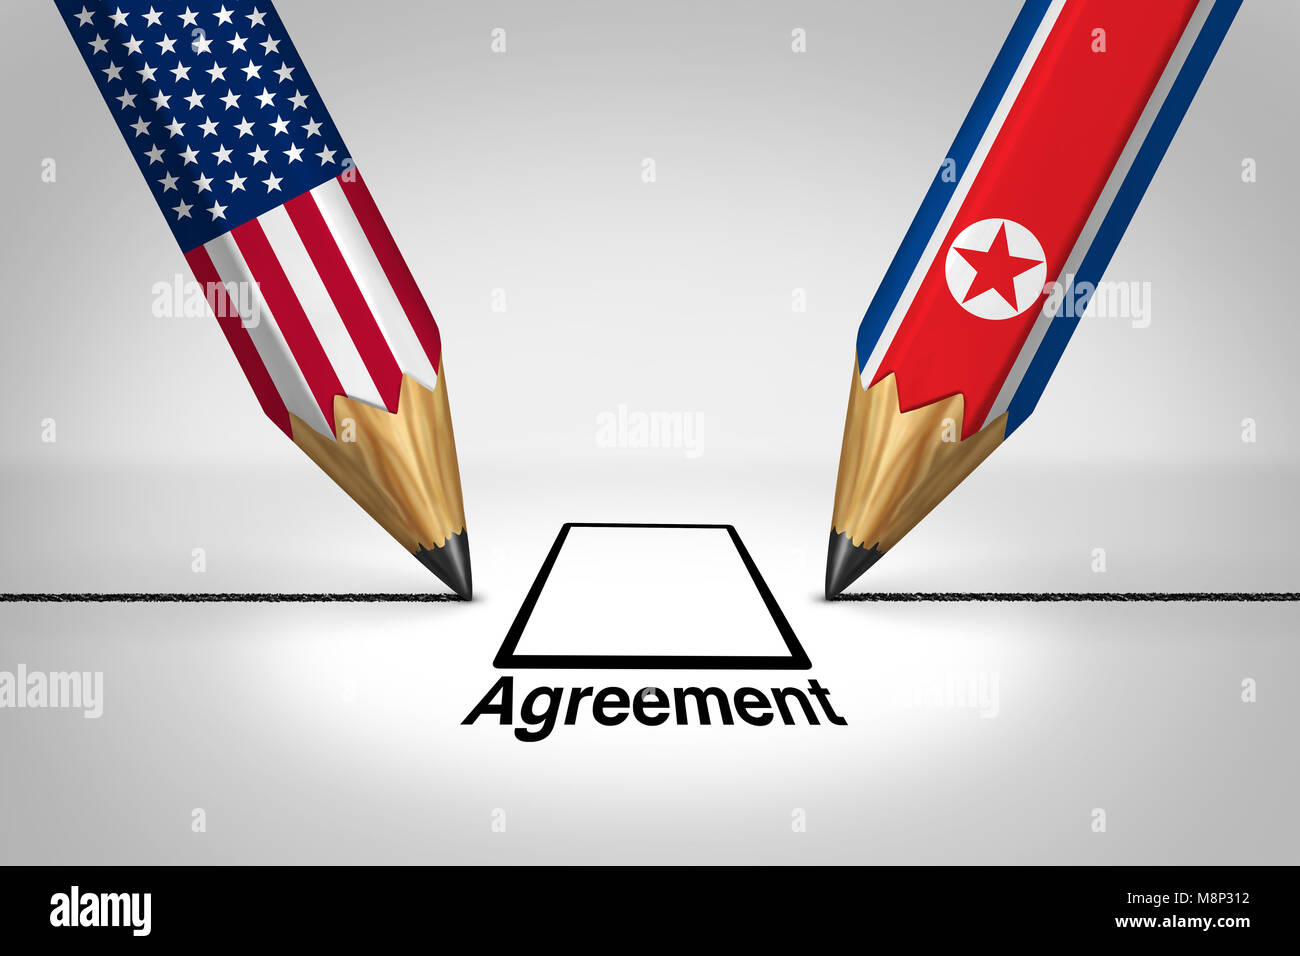 Vereinigten Staaten Nordkorea Diplomatie Abkommen und dem Amerikanischen und Nordkoreanischen diplomatischen Treffen mit Pjöngjang und Washington zusammen anschließen. Stockfoto